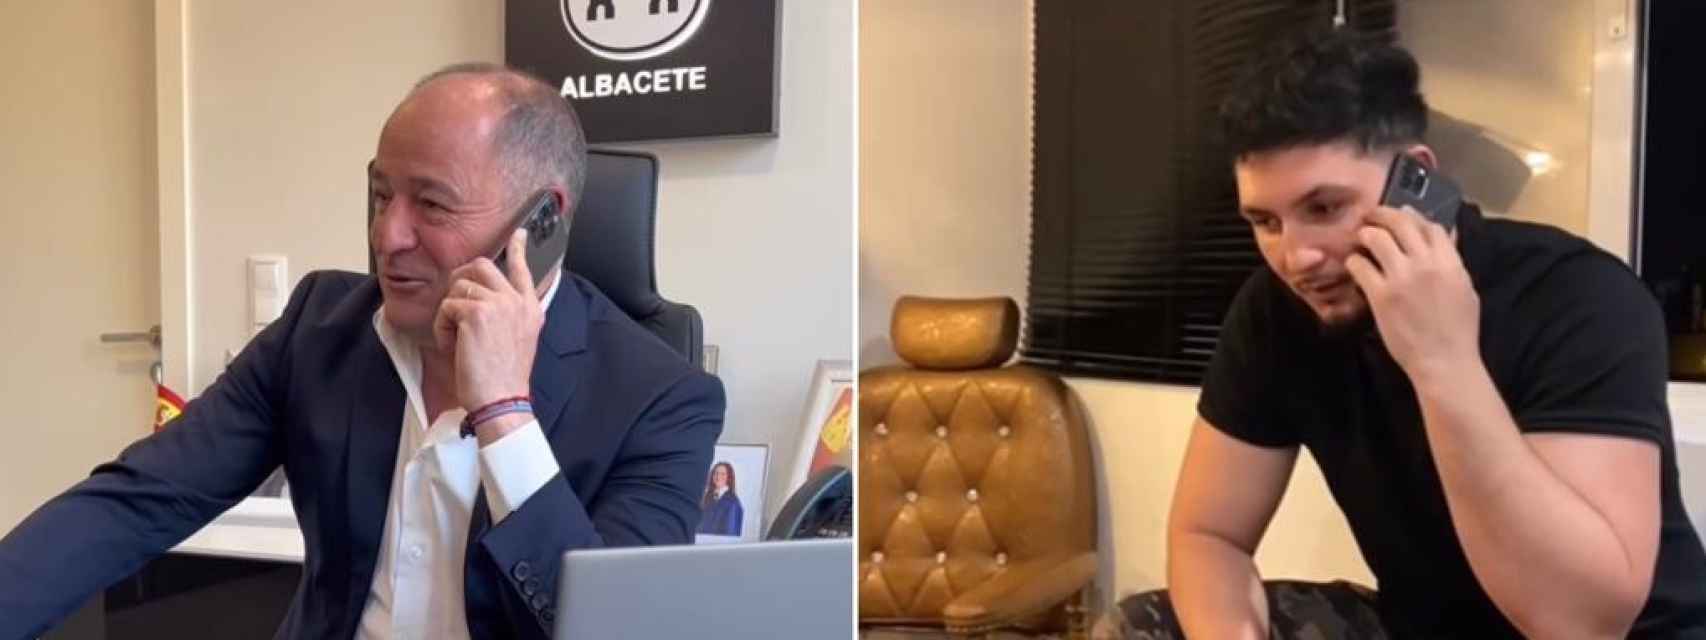 Se hace viral una graciosa conversación entre Omar Montes y el alcalde de Albacete